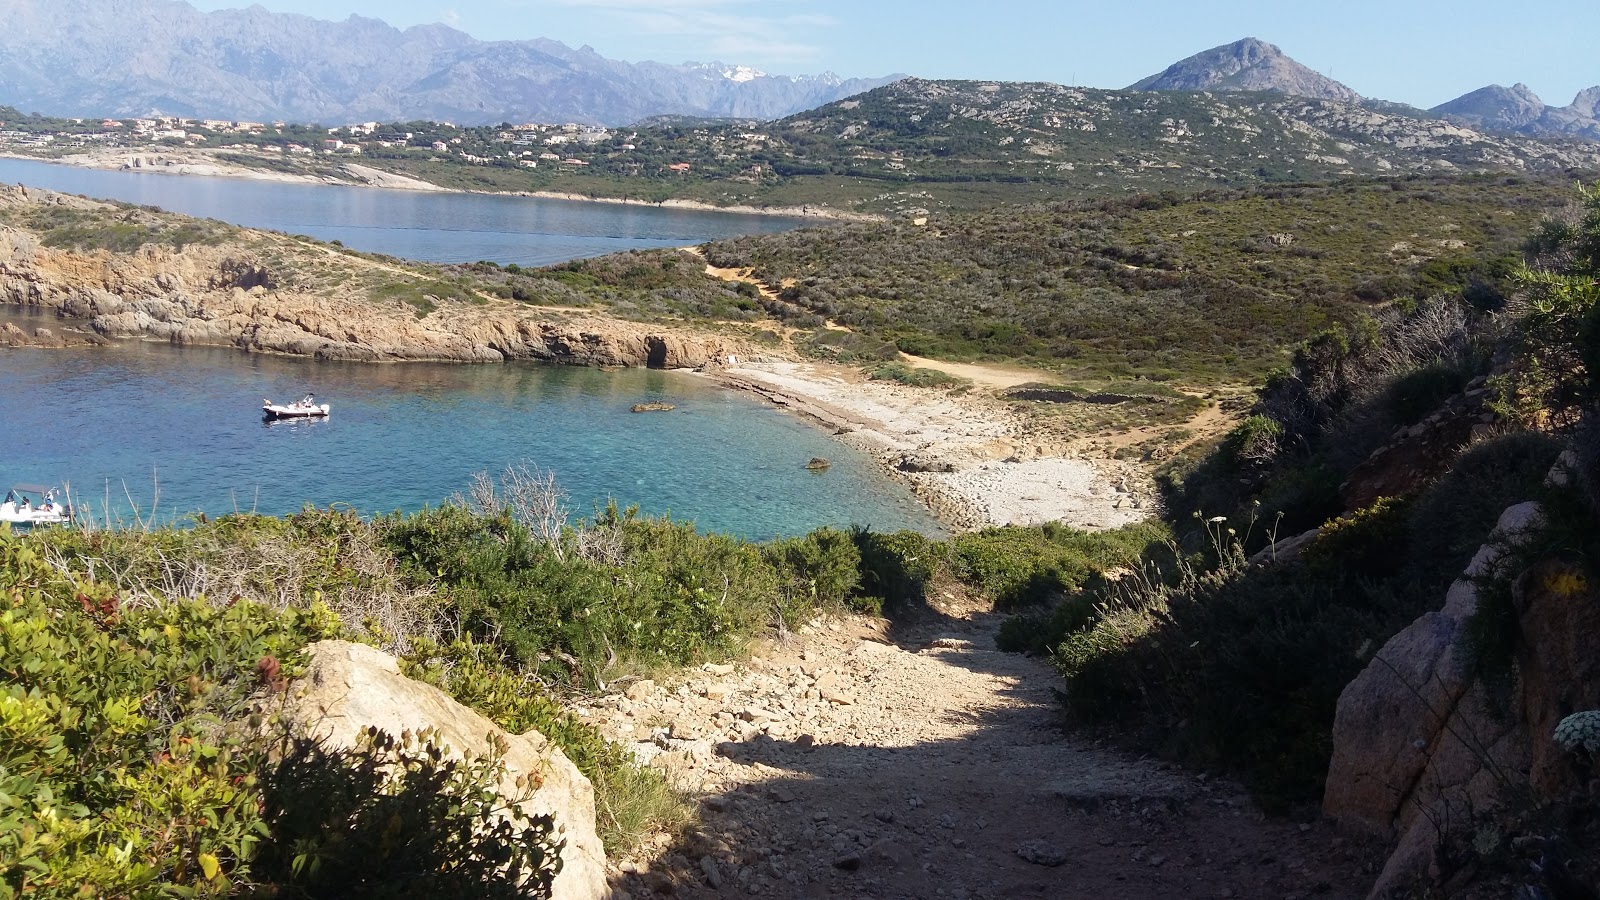 Fotografie cu Oscelluccia beach cu o suprafață de apa pură turcoaz